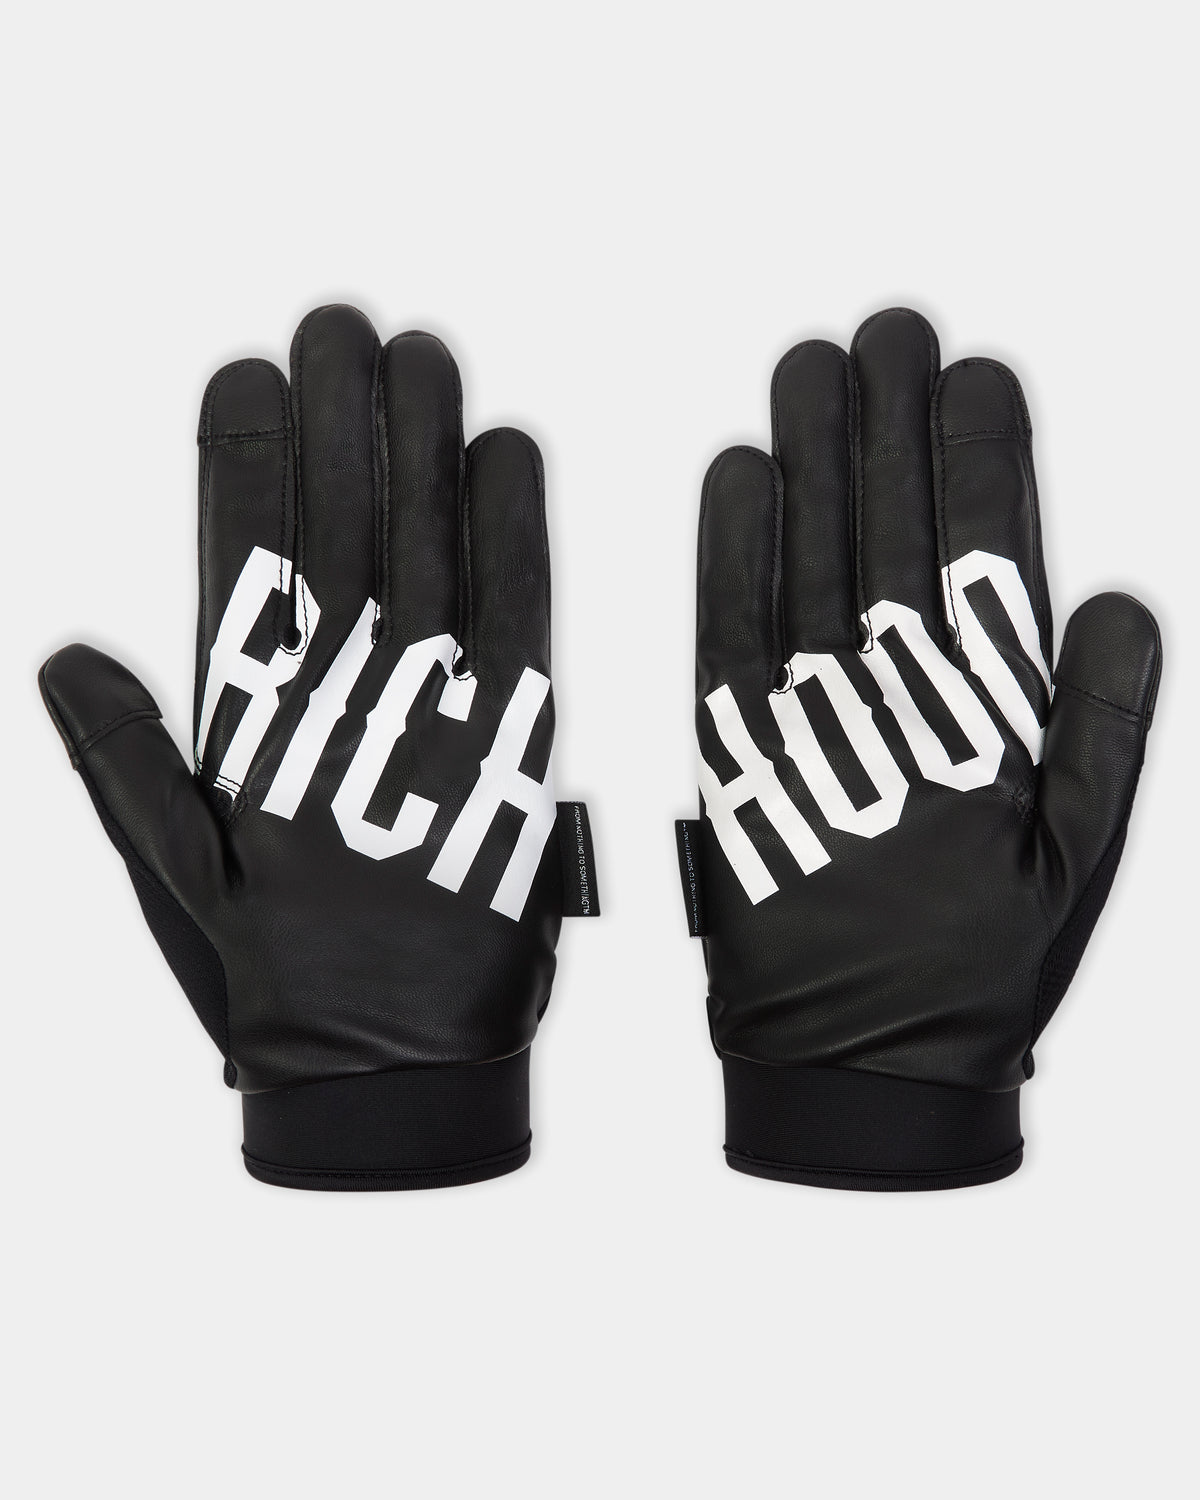 OG Rise Gloves - Black/White